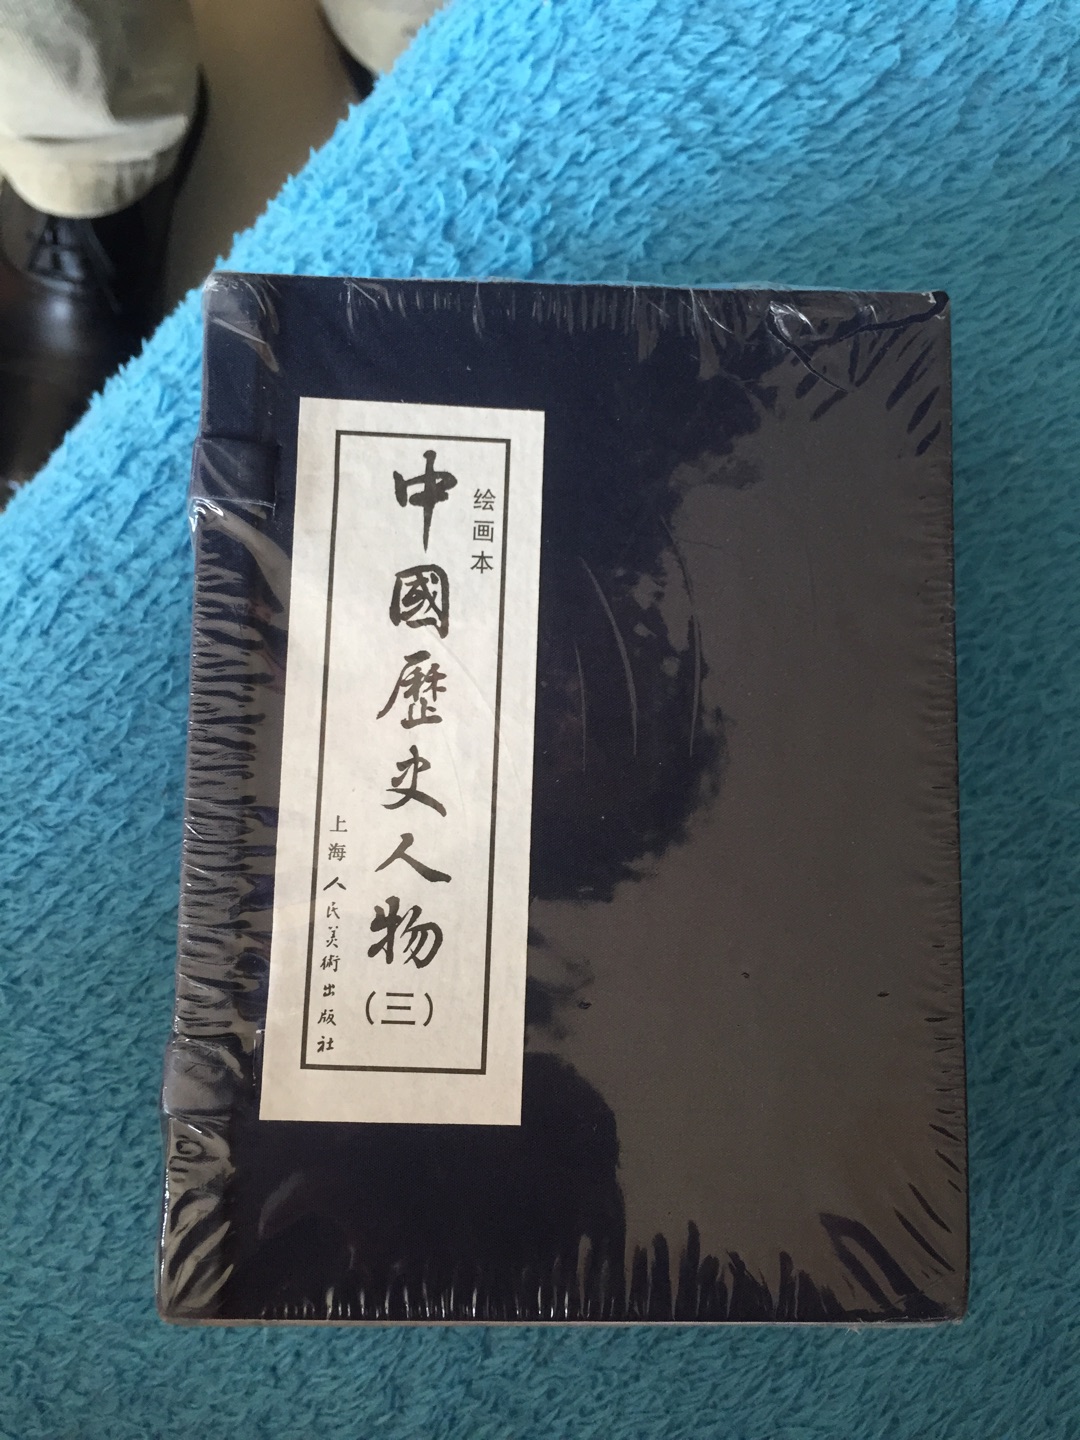 书刚到就打开看了，上海的书真是很有品质，在买书太给力了。